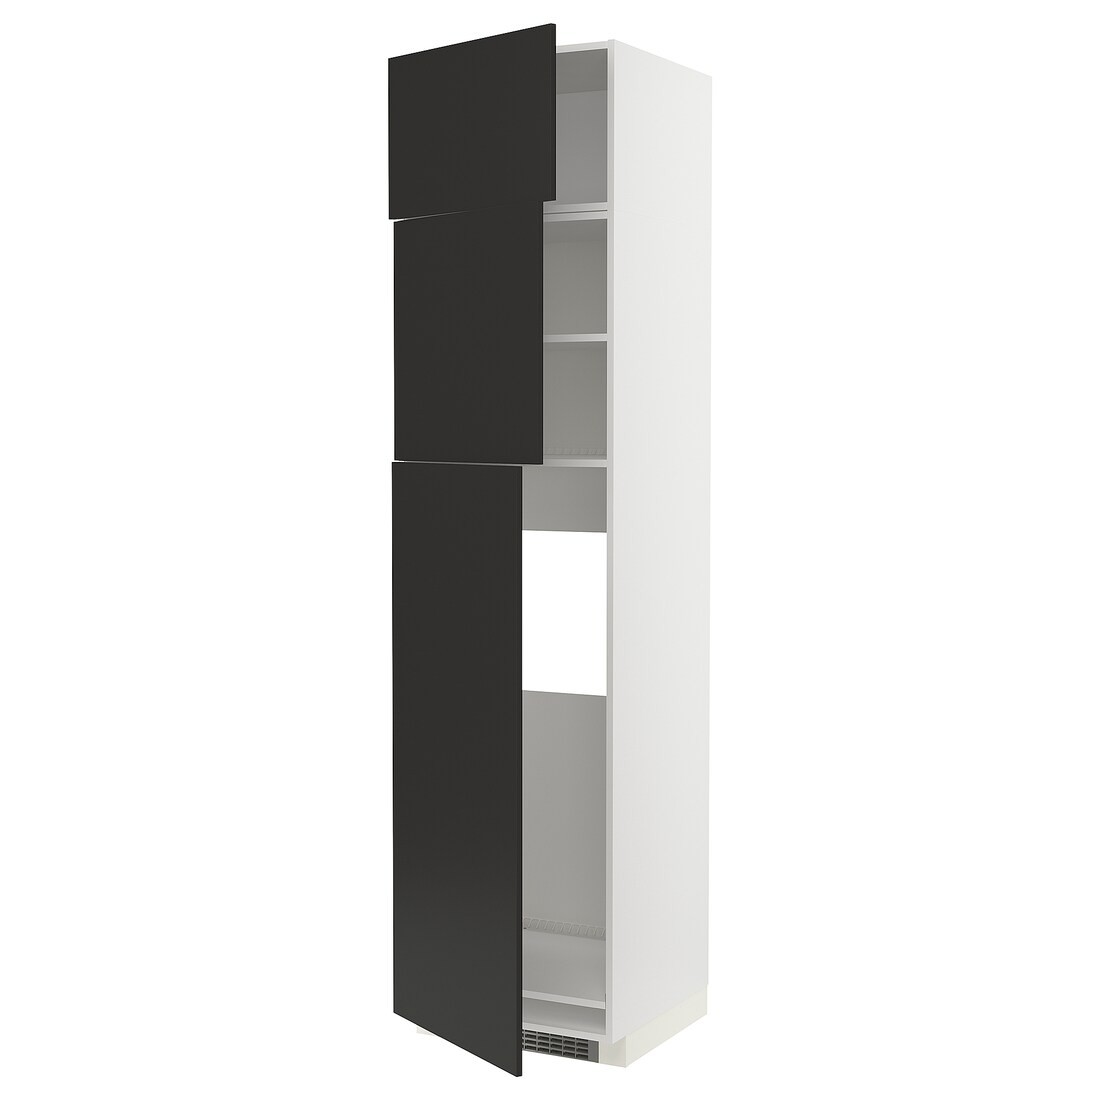 IKEA METOD МЕТОД Высокий шкаф для холодильника с 3 дверями, белый / Nickebo матовый антрацит, 60x60x240 см 99497483 | 994.974.83